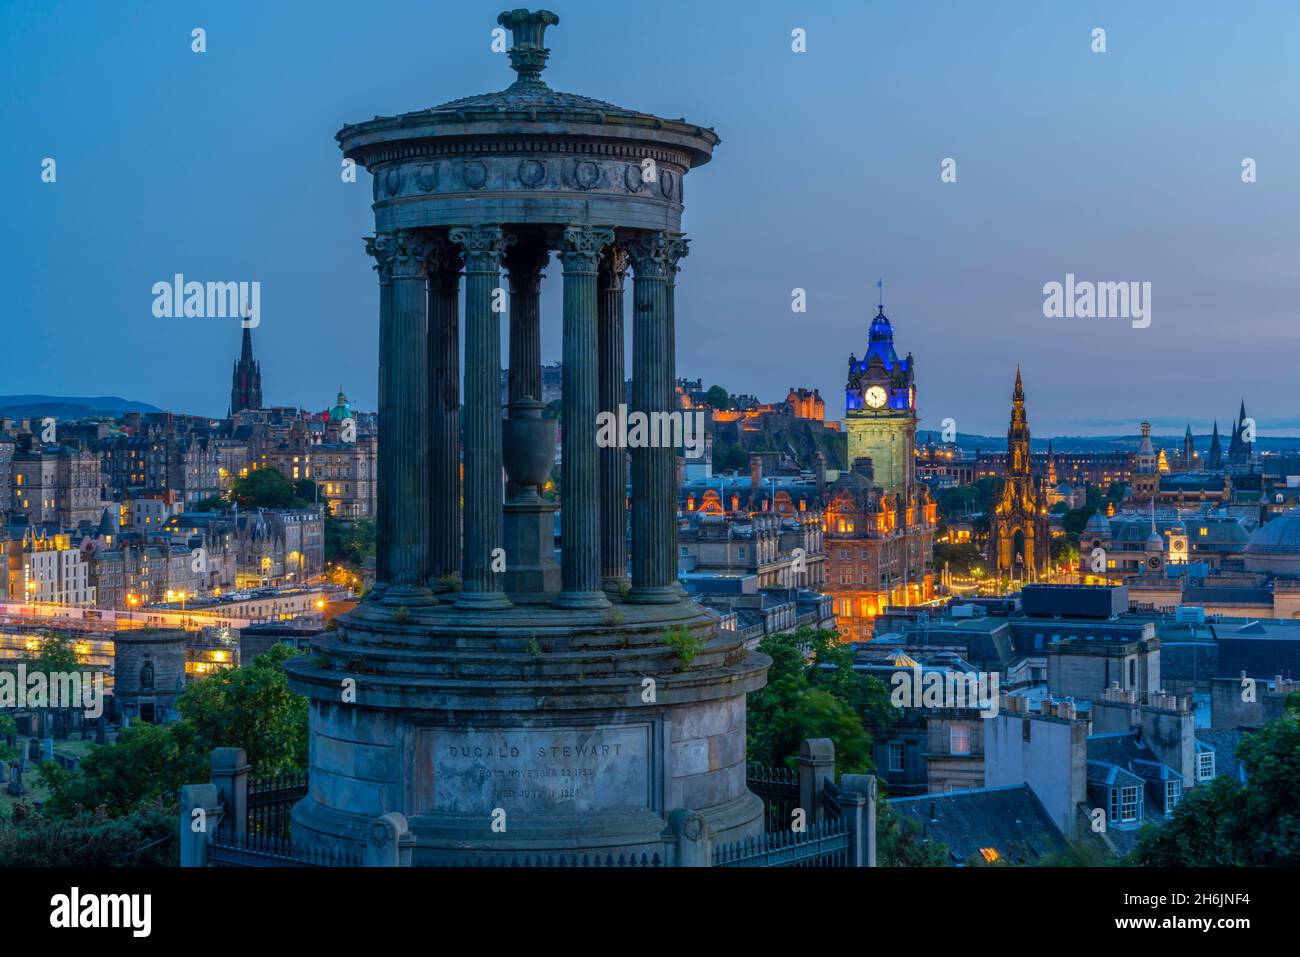 Vue sur le château d'Édimbourg, l'hôtel Balmoral et le monument Dugald Stewart depuis Calton Hill au crépuscule, États-Unis, Édimbourg, Lothian, Écosse Banque D'Images